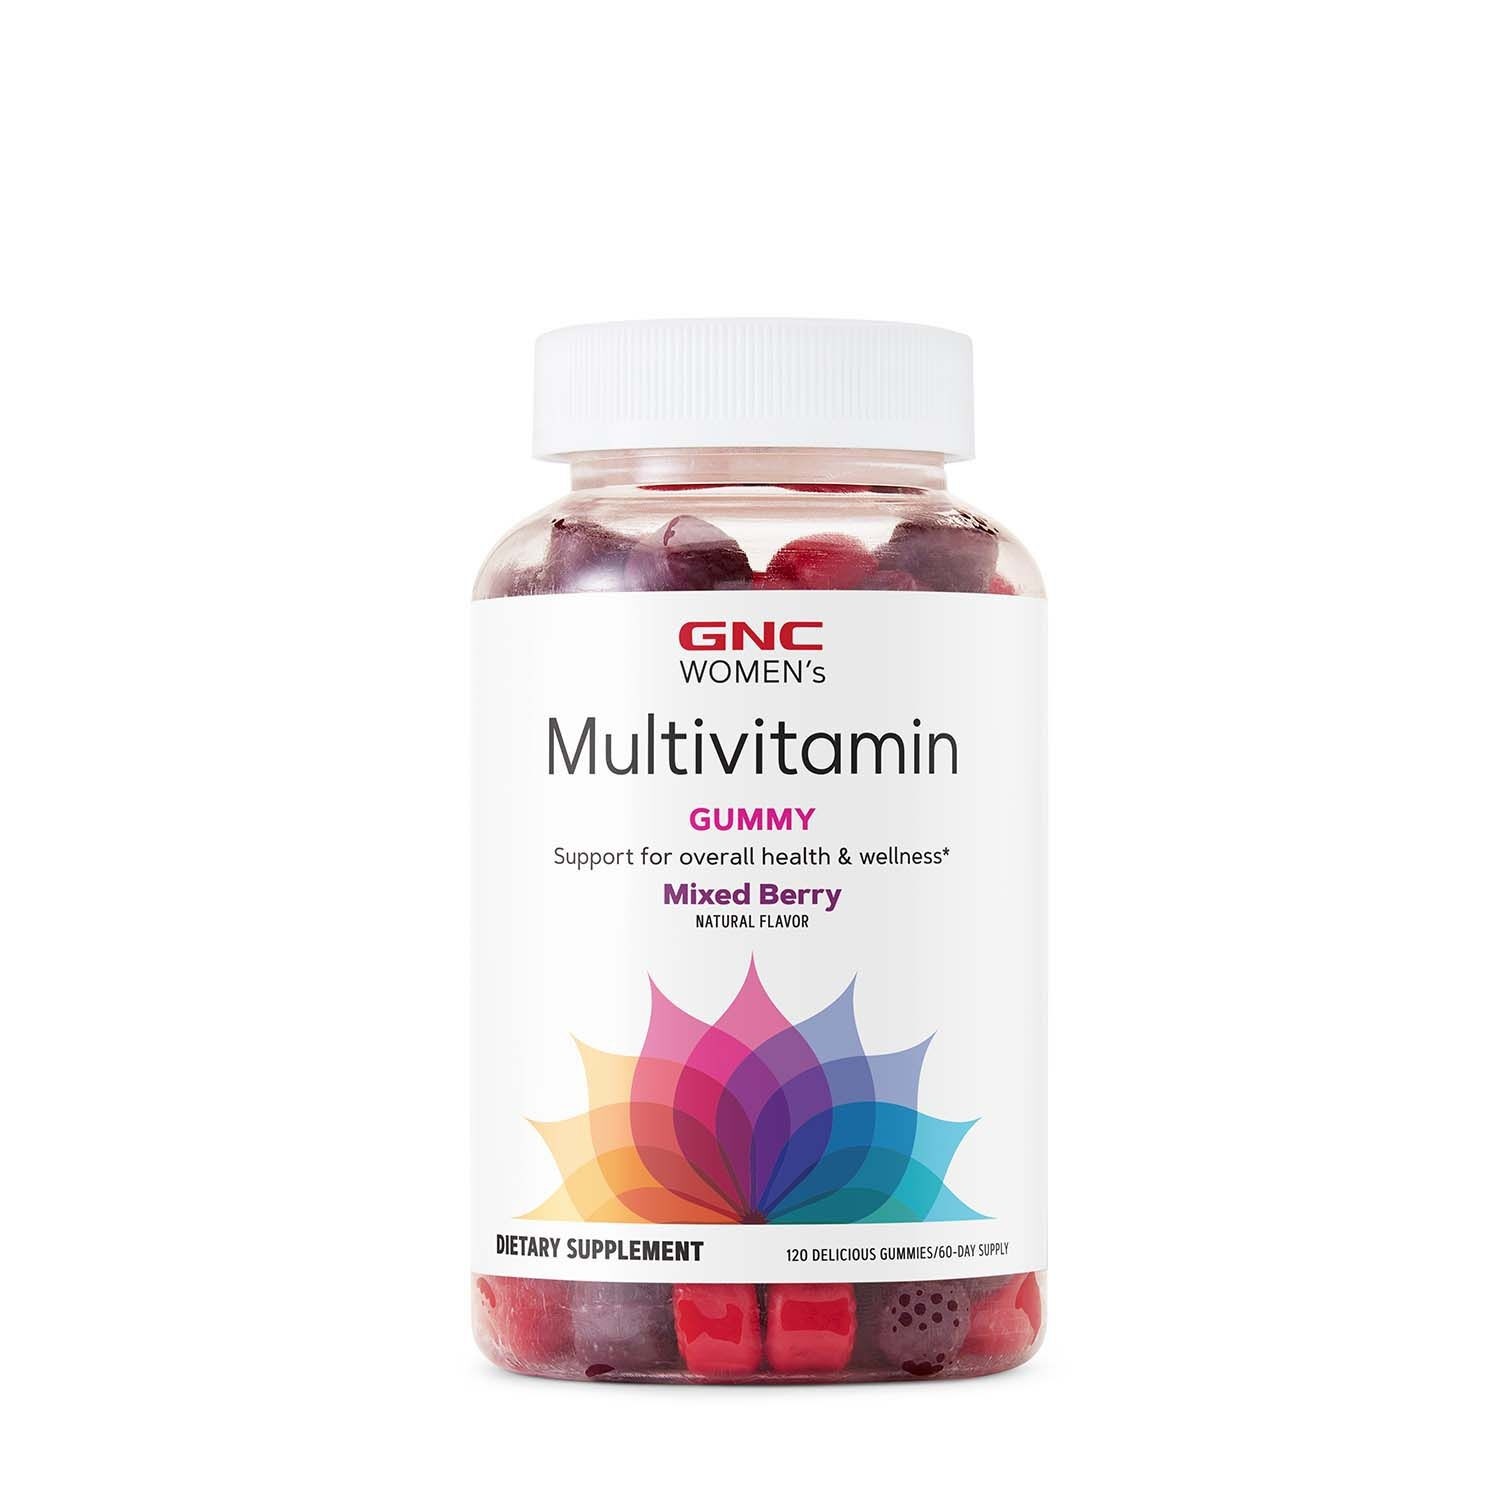 Jeleuri cu multivitamine pentru femei Women’s Multivitamin Gummy, aroma de fructe de padure, 120 jeleuri, GNC